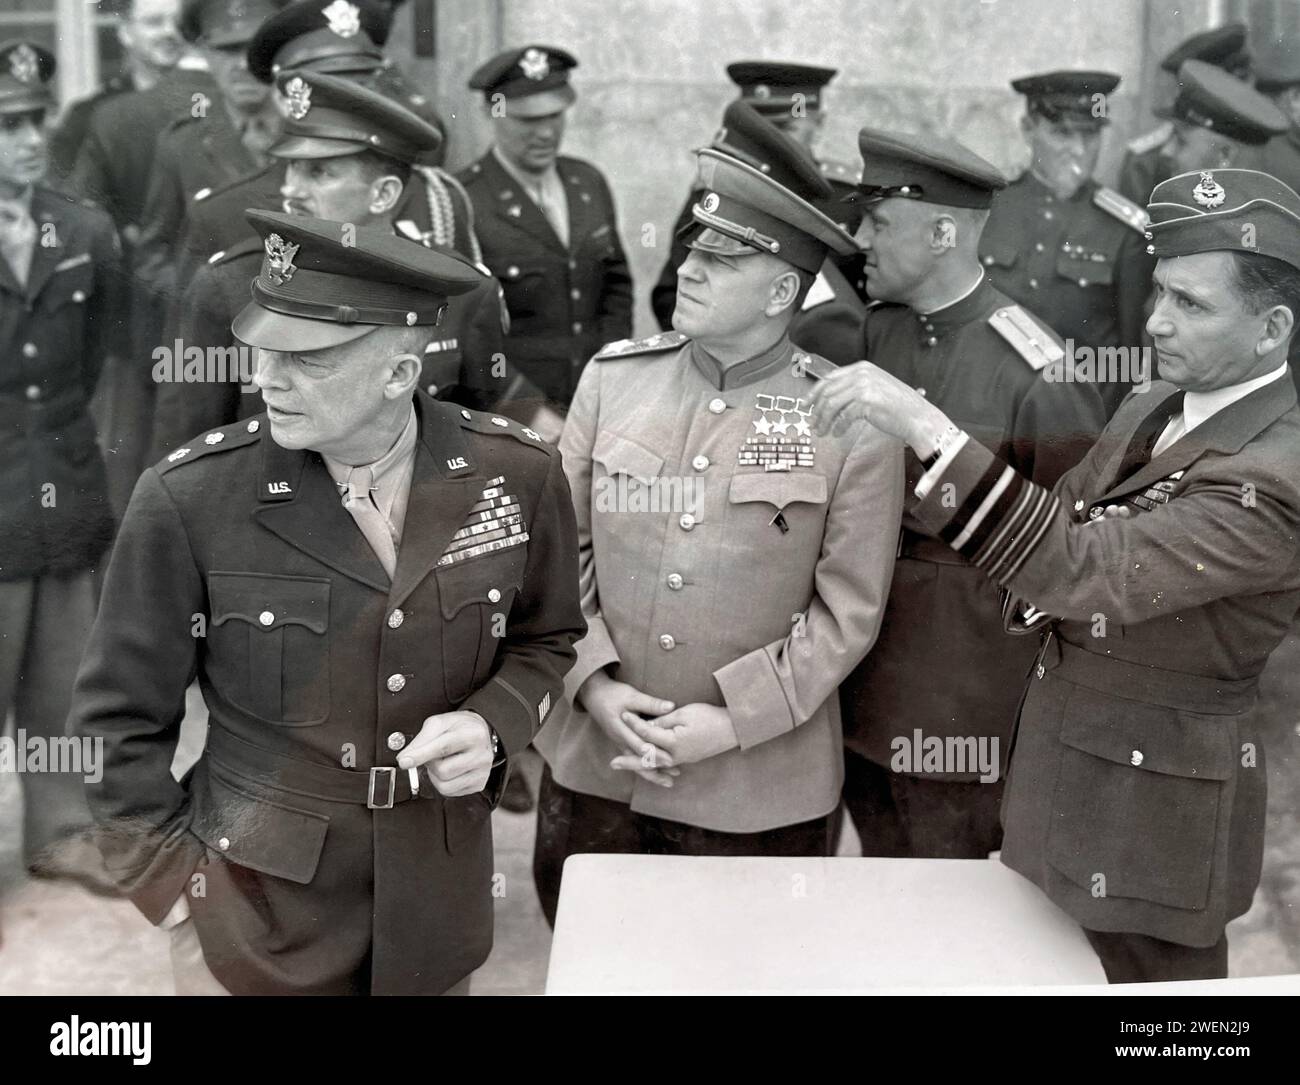 IL GENERALE DWIGHT D. EISENHOWER (a sinistra) nel suo quartier generale di Francoforte, durante una cerimonia il 10 giugno 1945, insieme al maresciallo sovietico Georgy Zhukov (al centro) e al Chief Marshal britannico Sir Arthur Tedder. Foto Stock